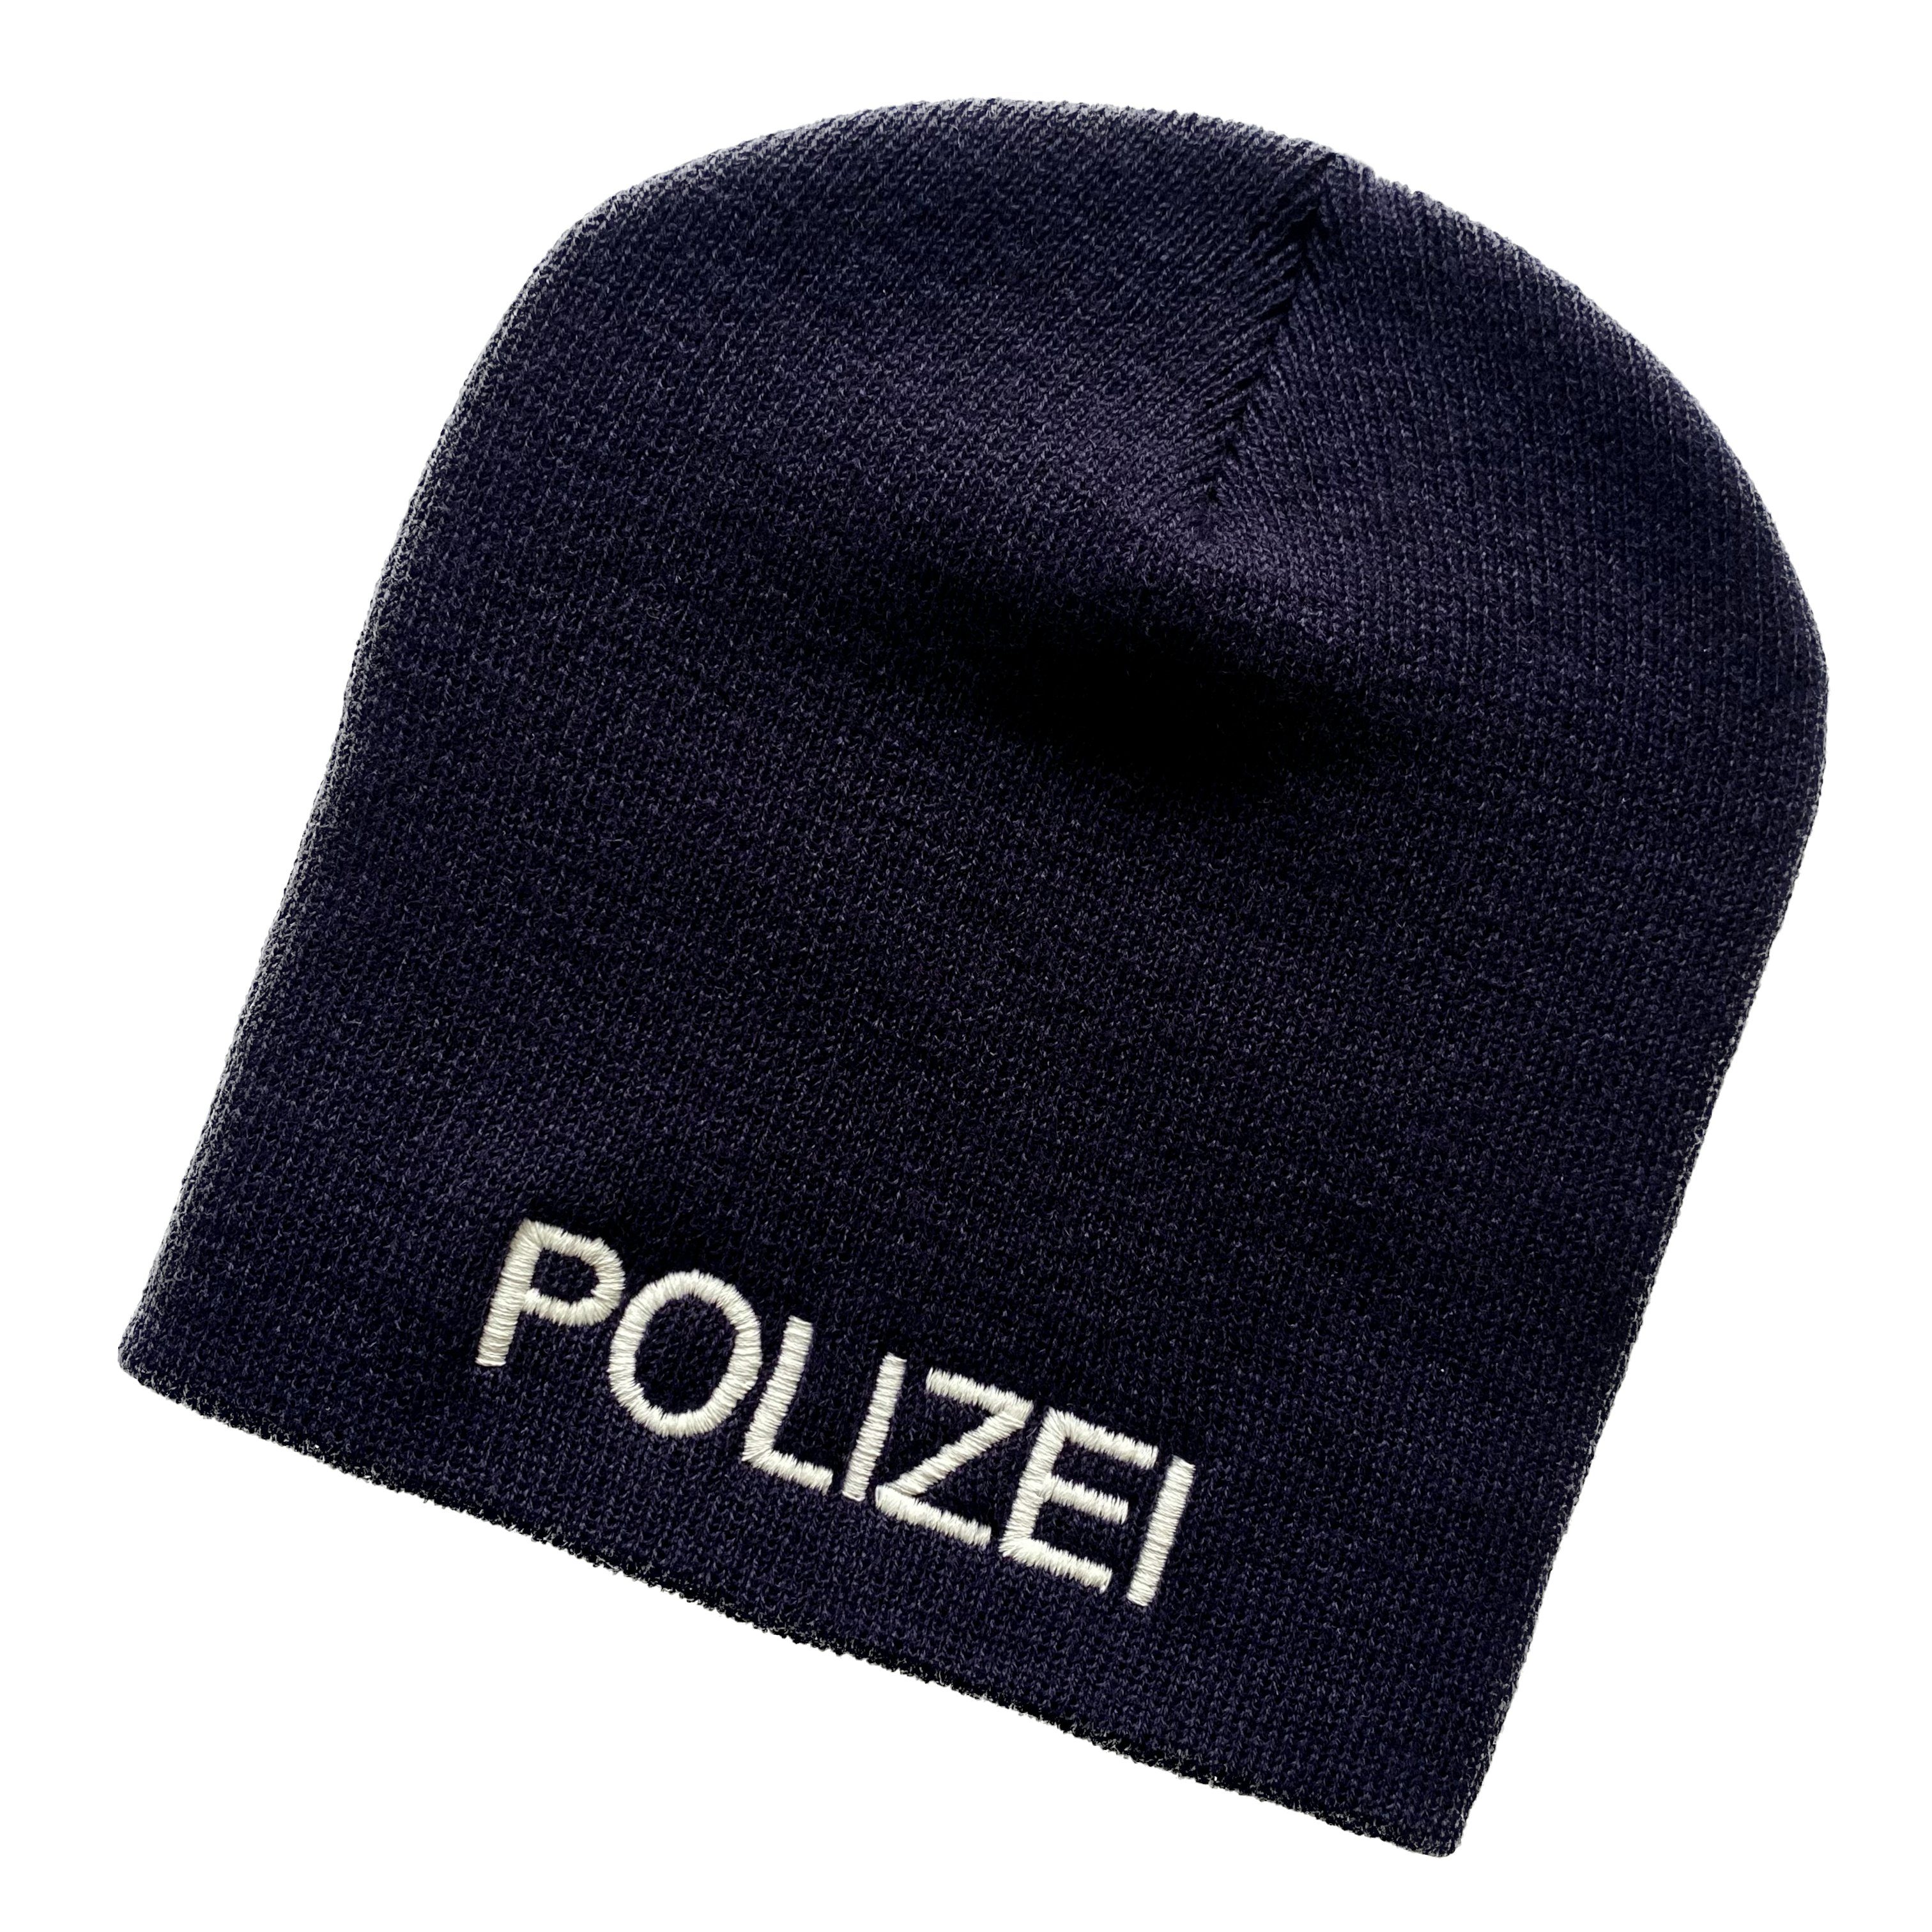 Schnoschi Strickmütze Strickmütze ohne Umschlag (Beanie Mütze) mit Polizei bestickt ohne Umschlag dunkelblau